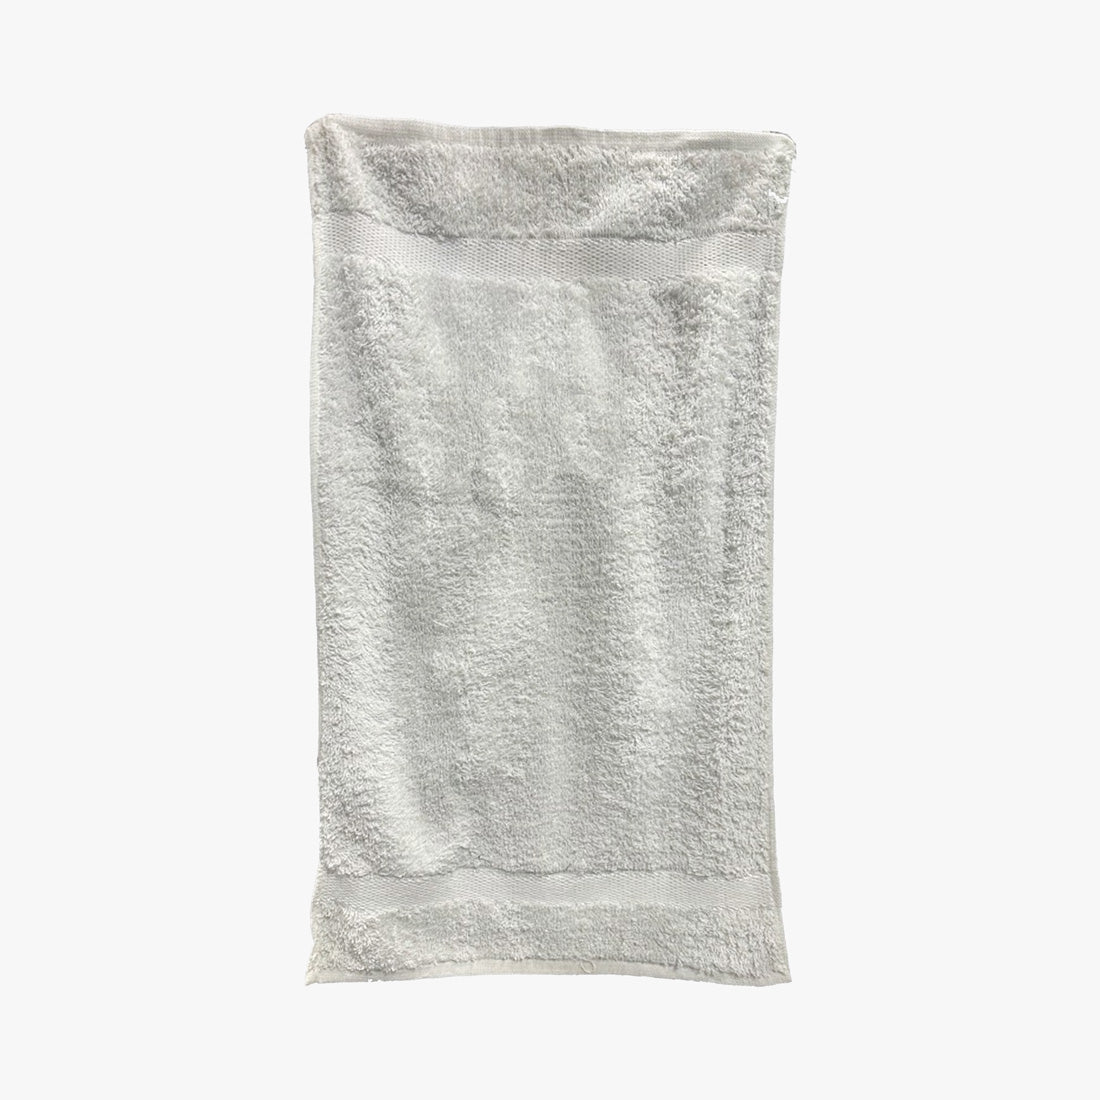 UNITEX HAND TOWEL 16x27 WHITE (TM01W - 127227 )  - 7136